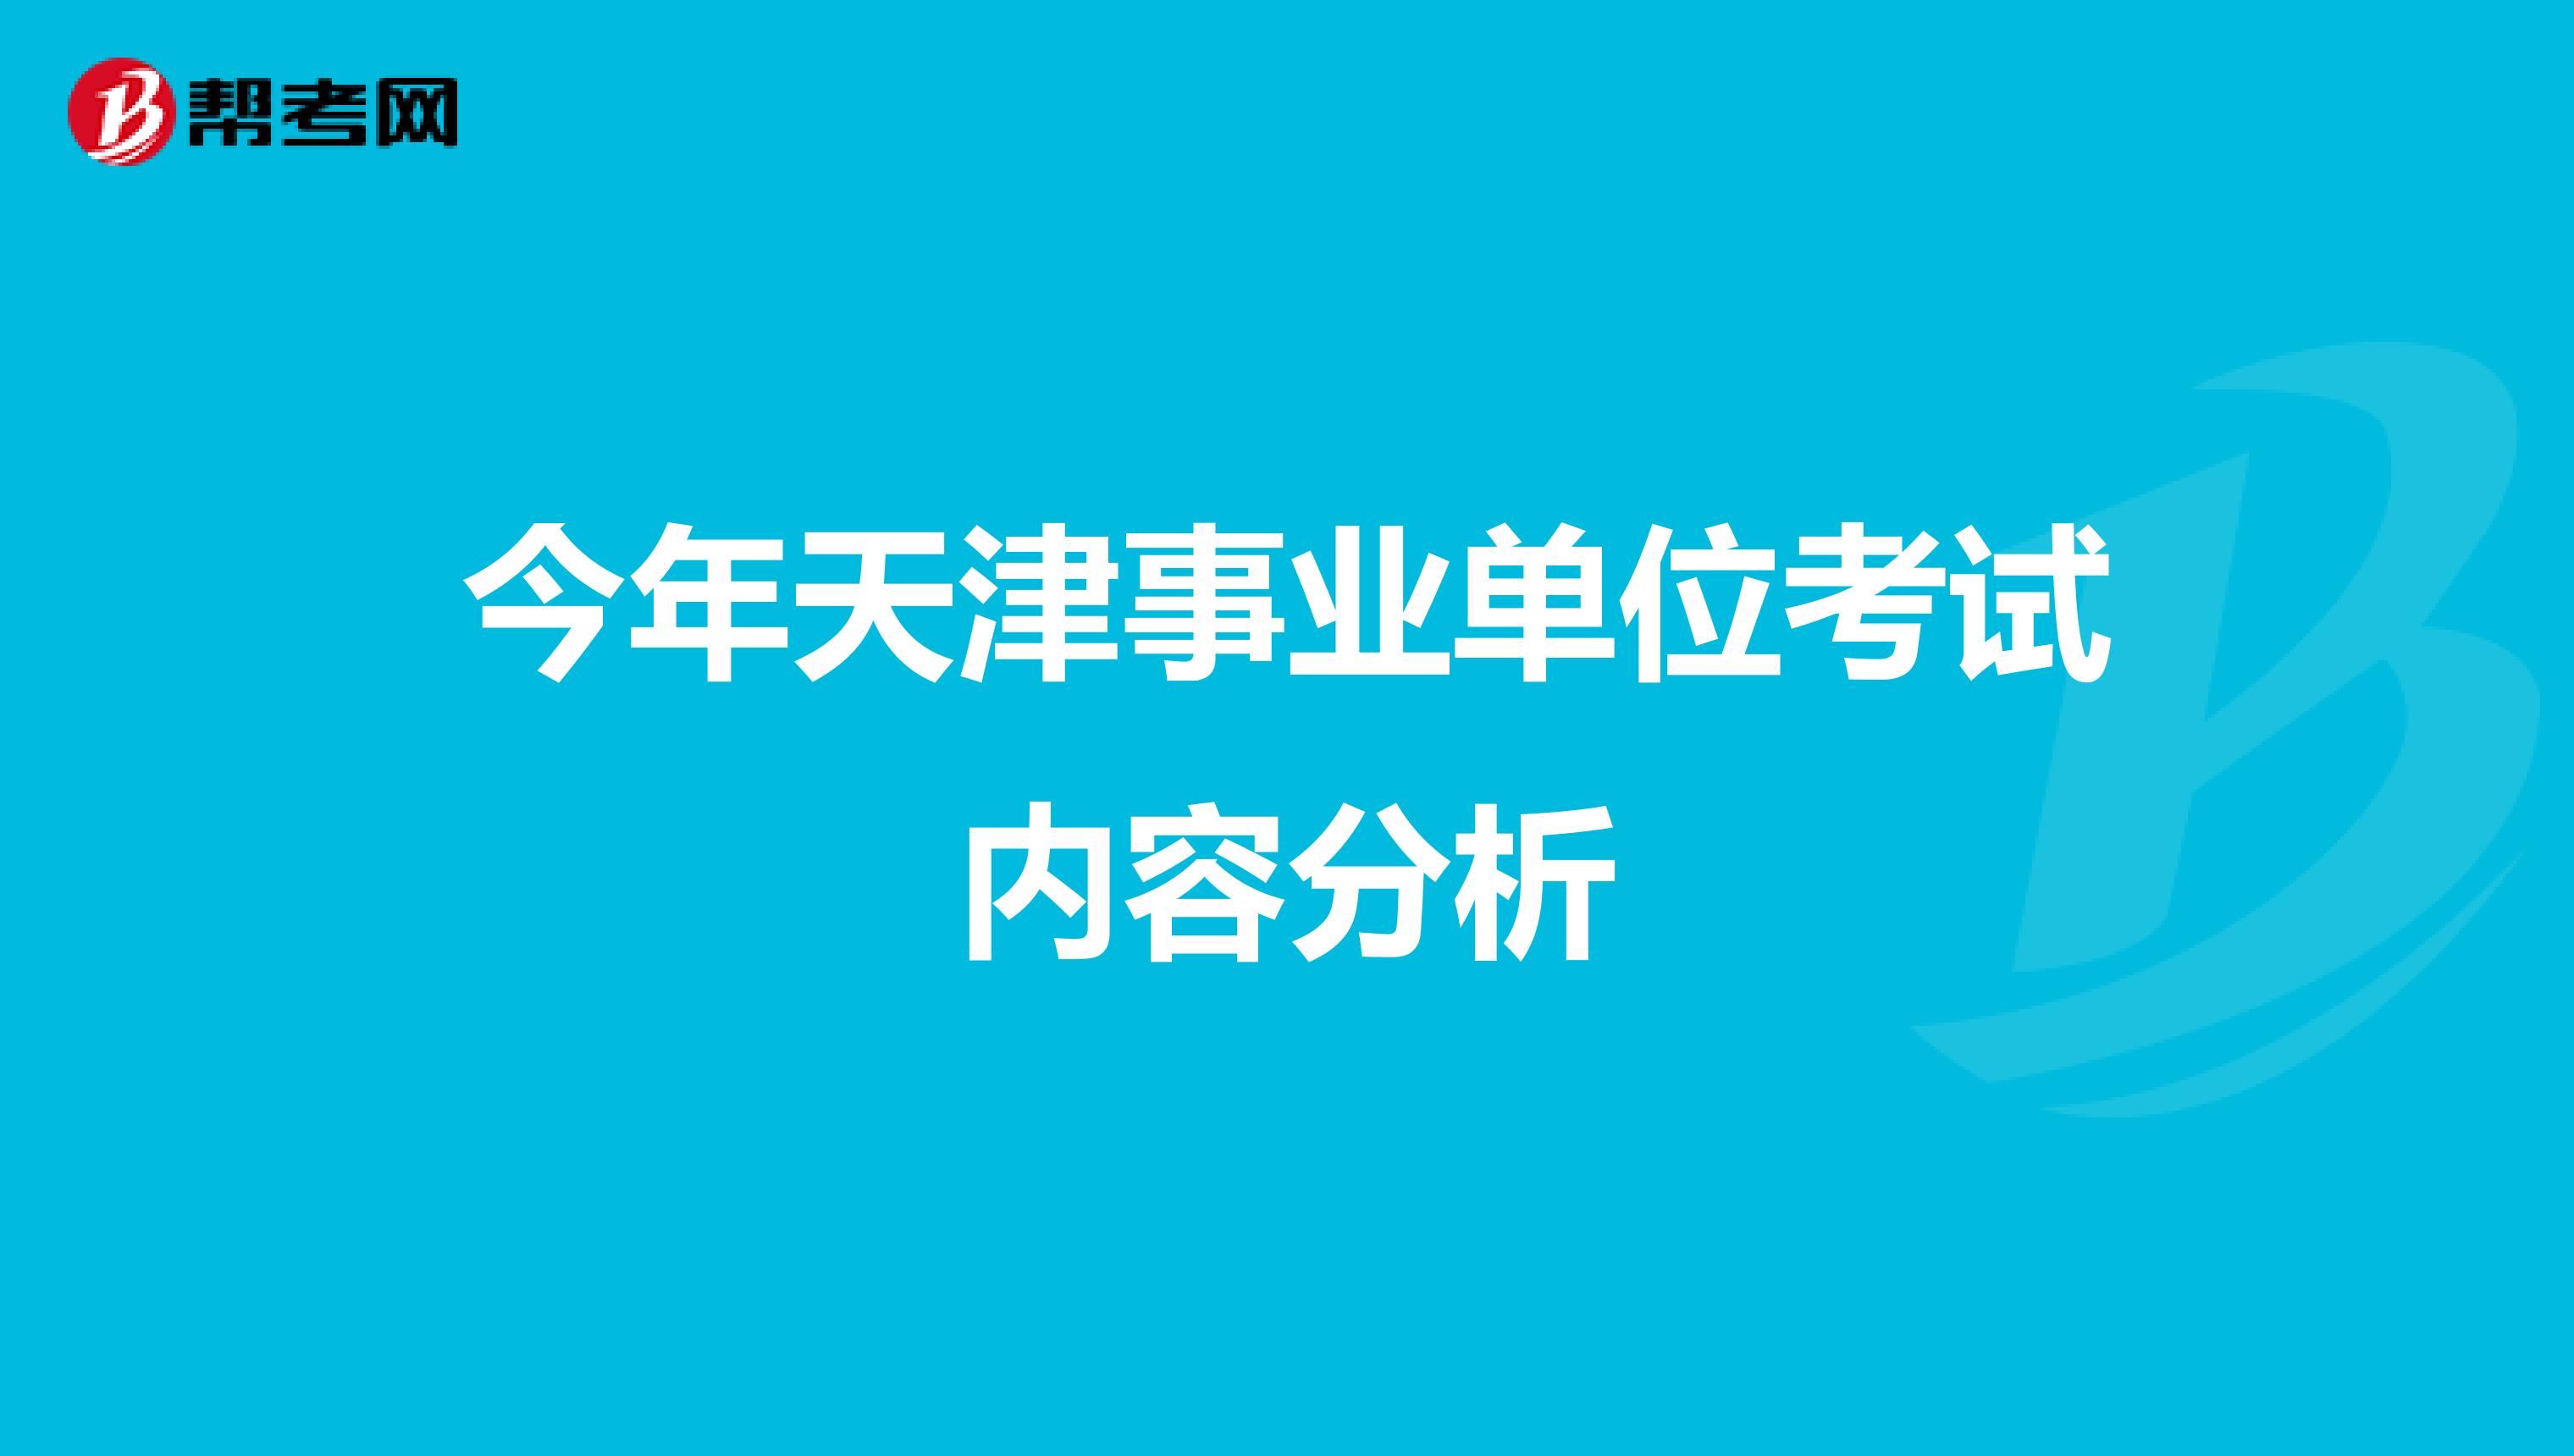 今年天津事业单位考试内容分析